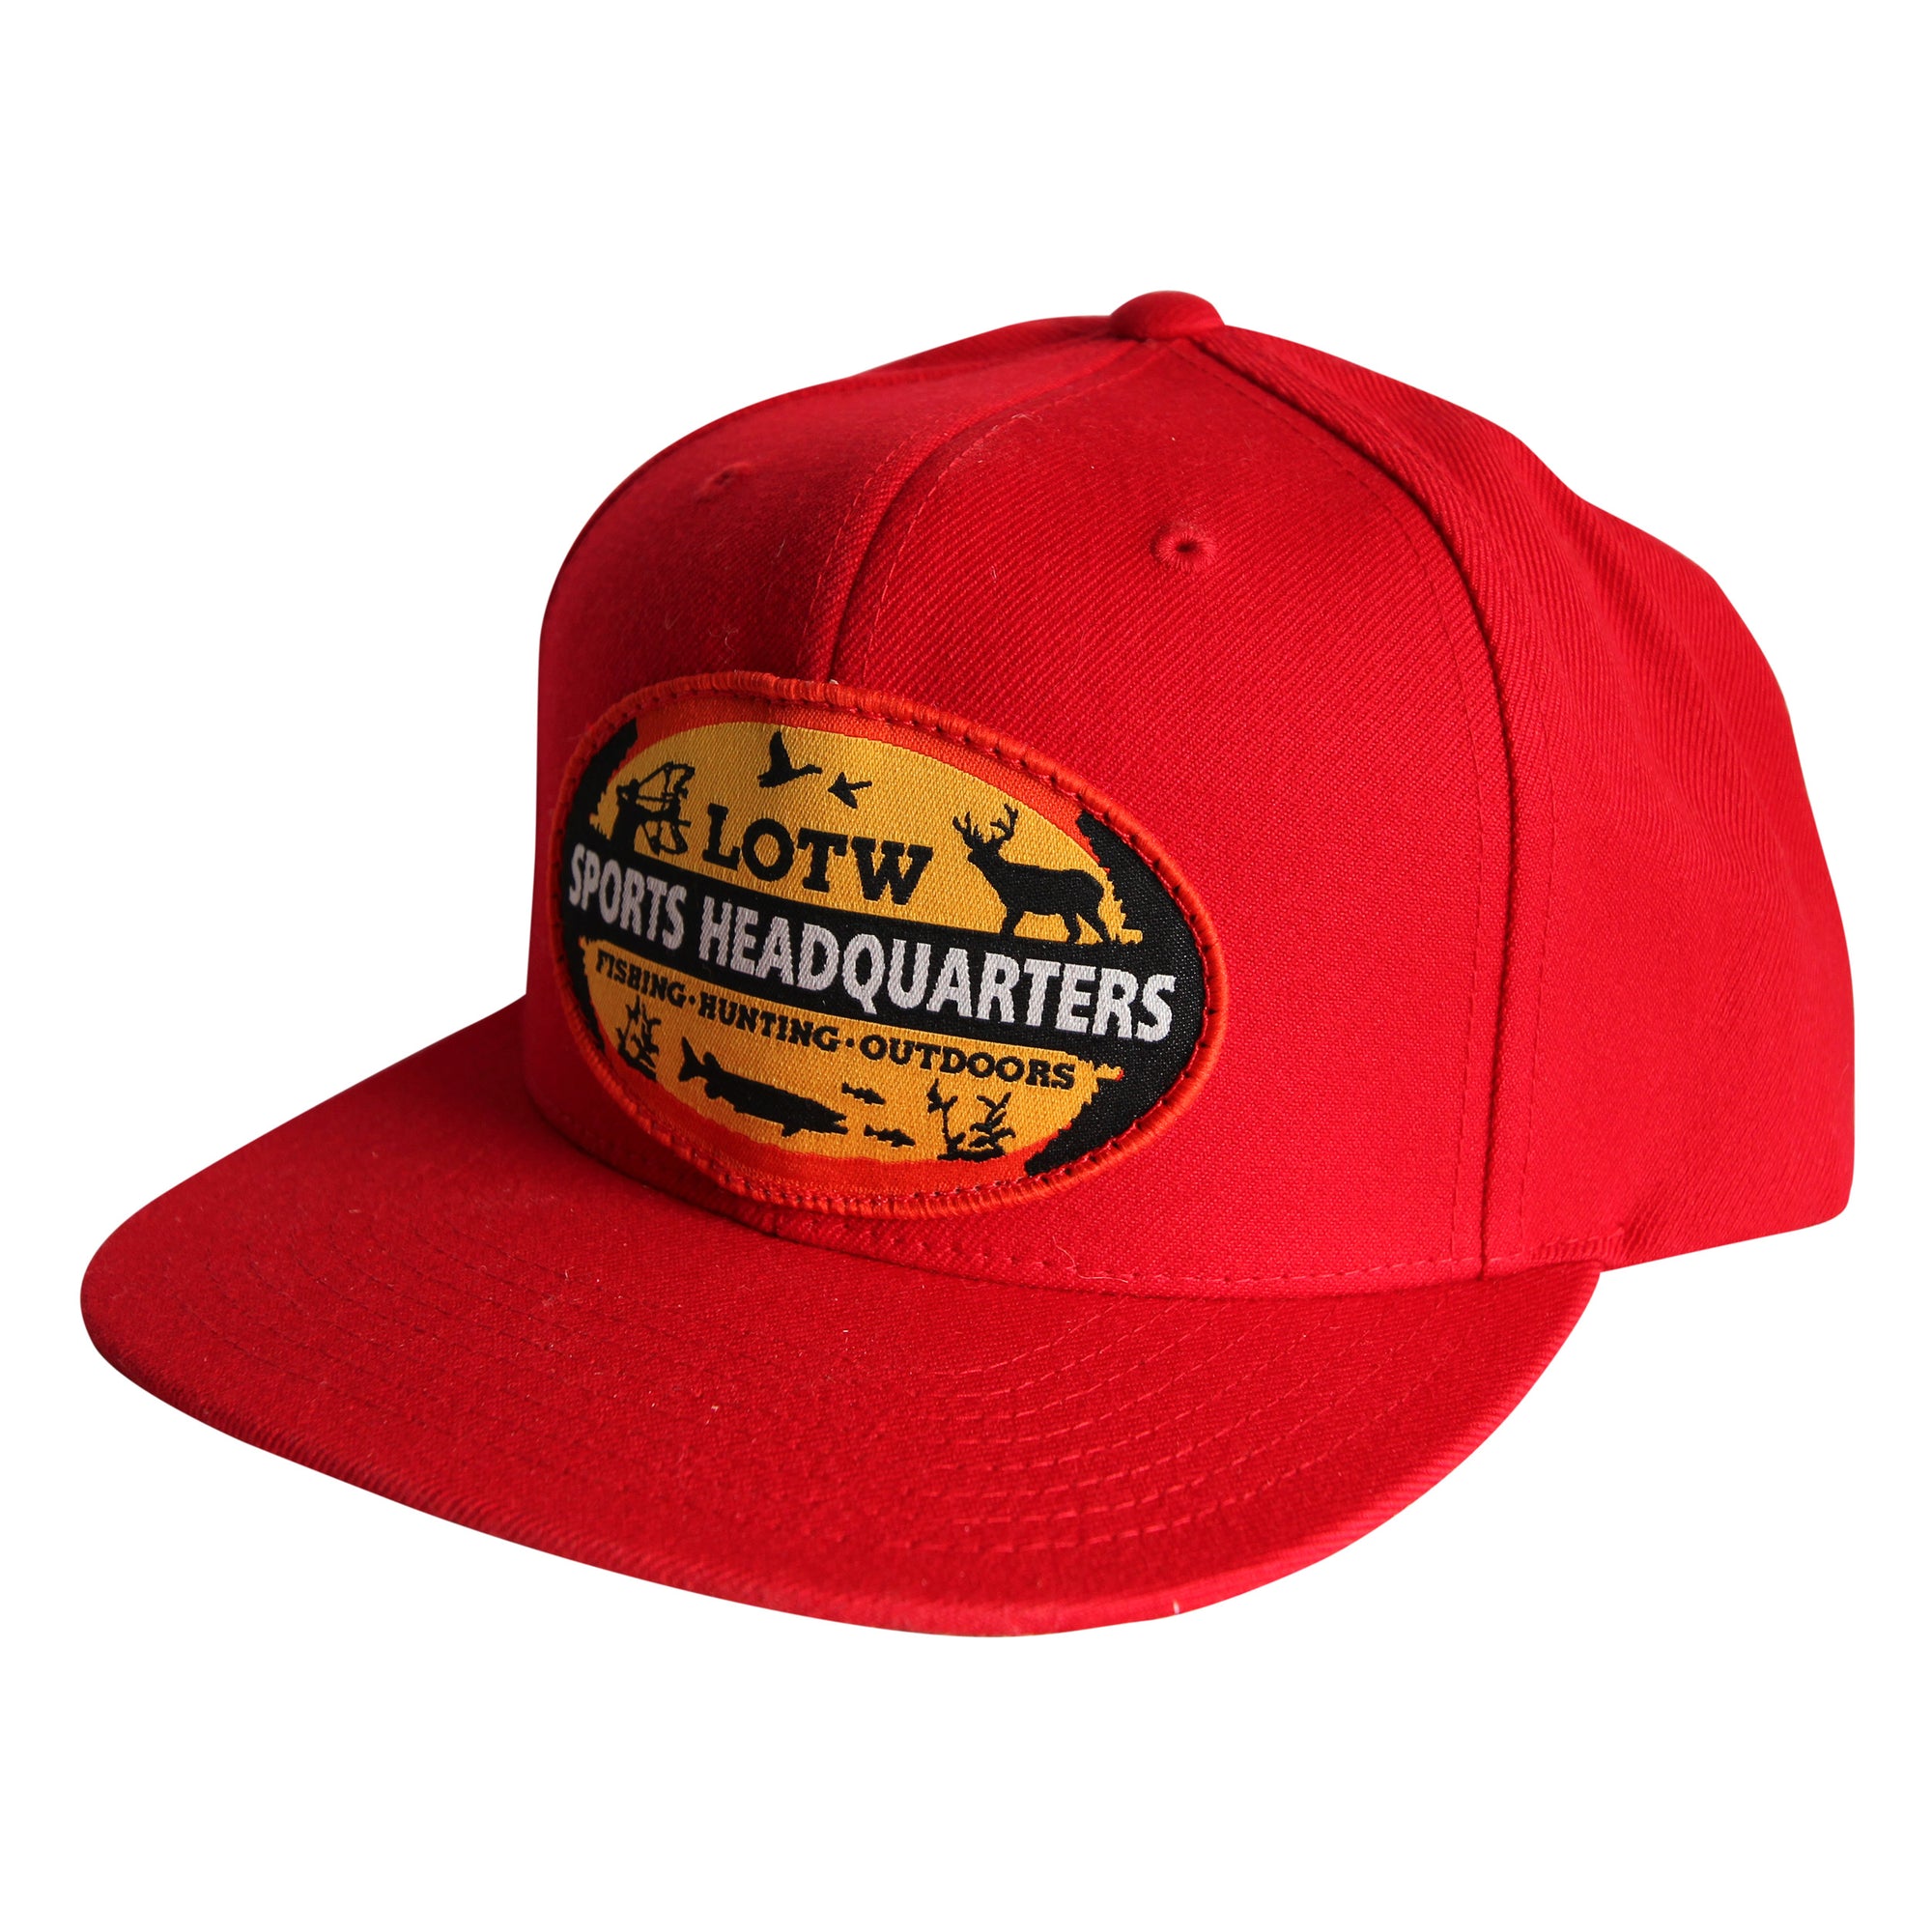 LOTW Sports Headquarters Classic Flat Visor Snapback Hats - Red